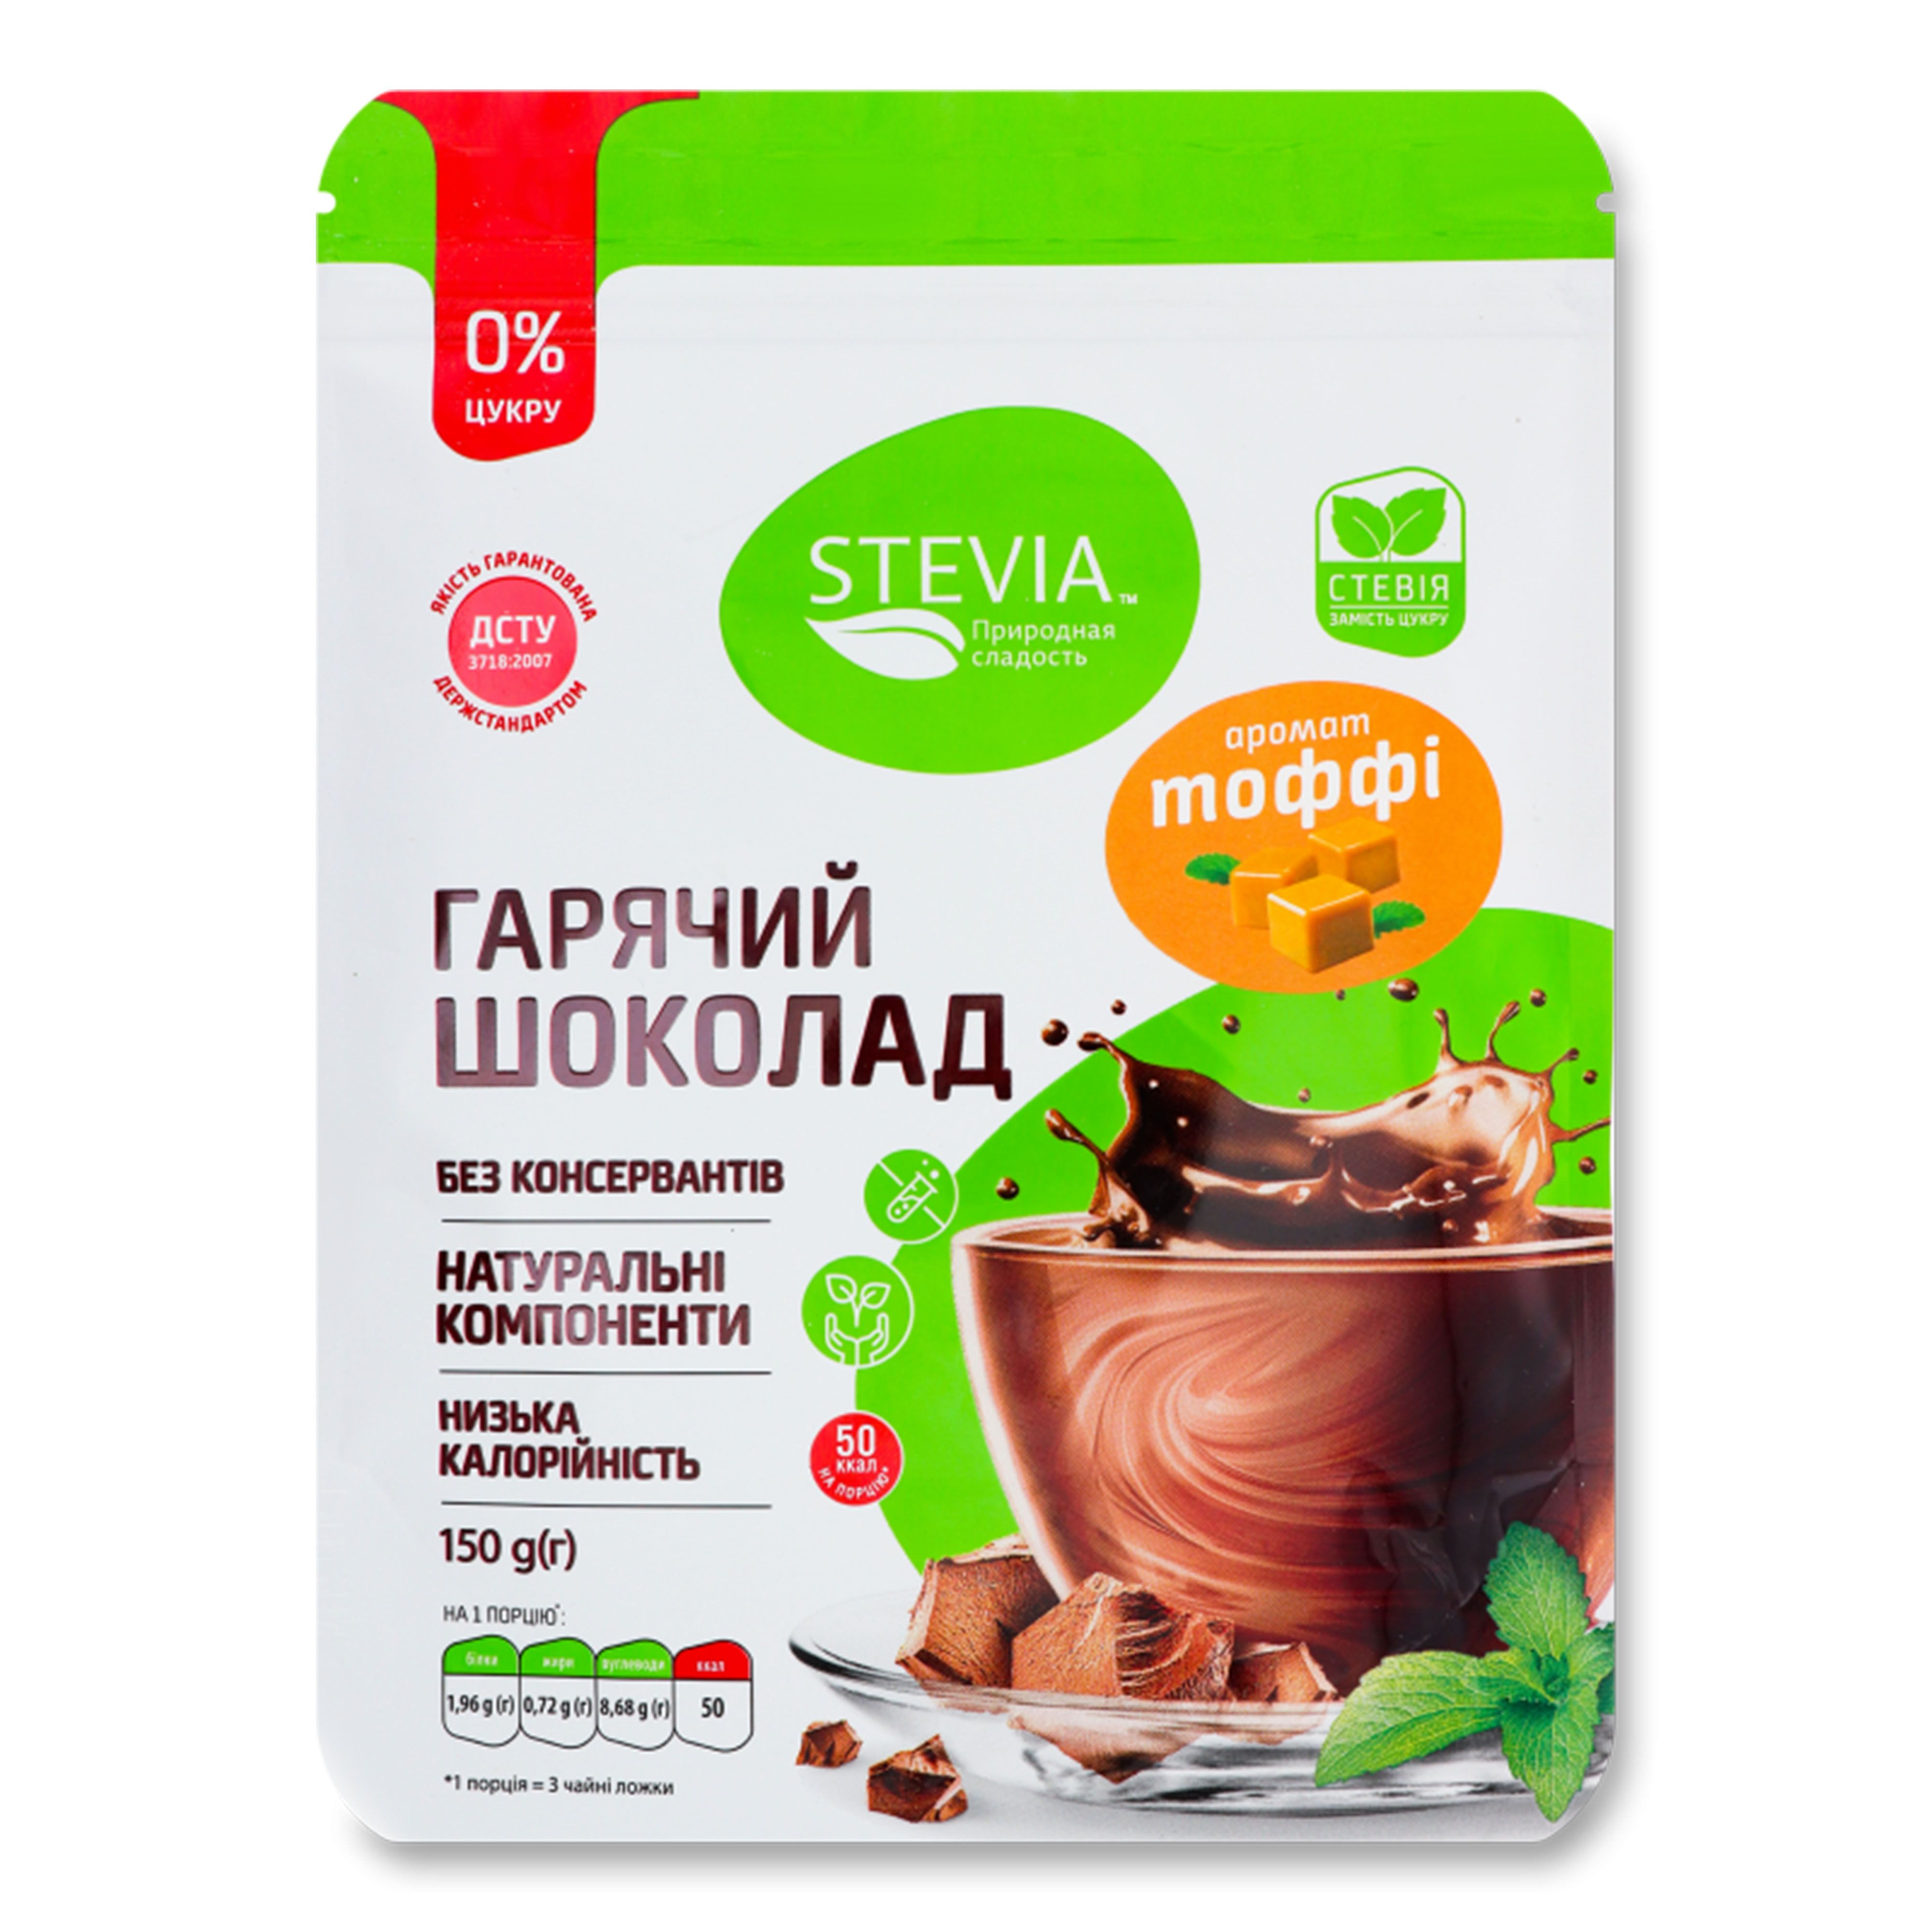 Шоколад гарячий Stevia зі смаком тоффі, 150 г. (350129)
 thumbnail popup